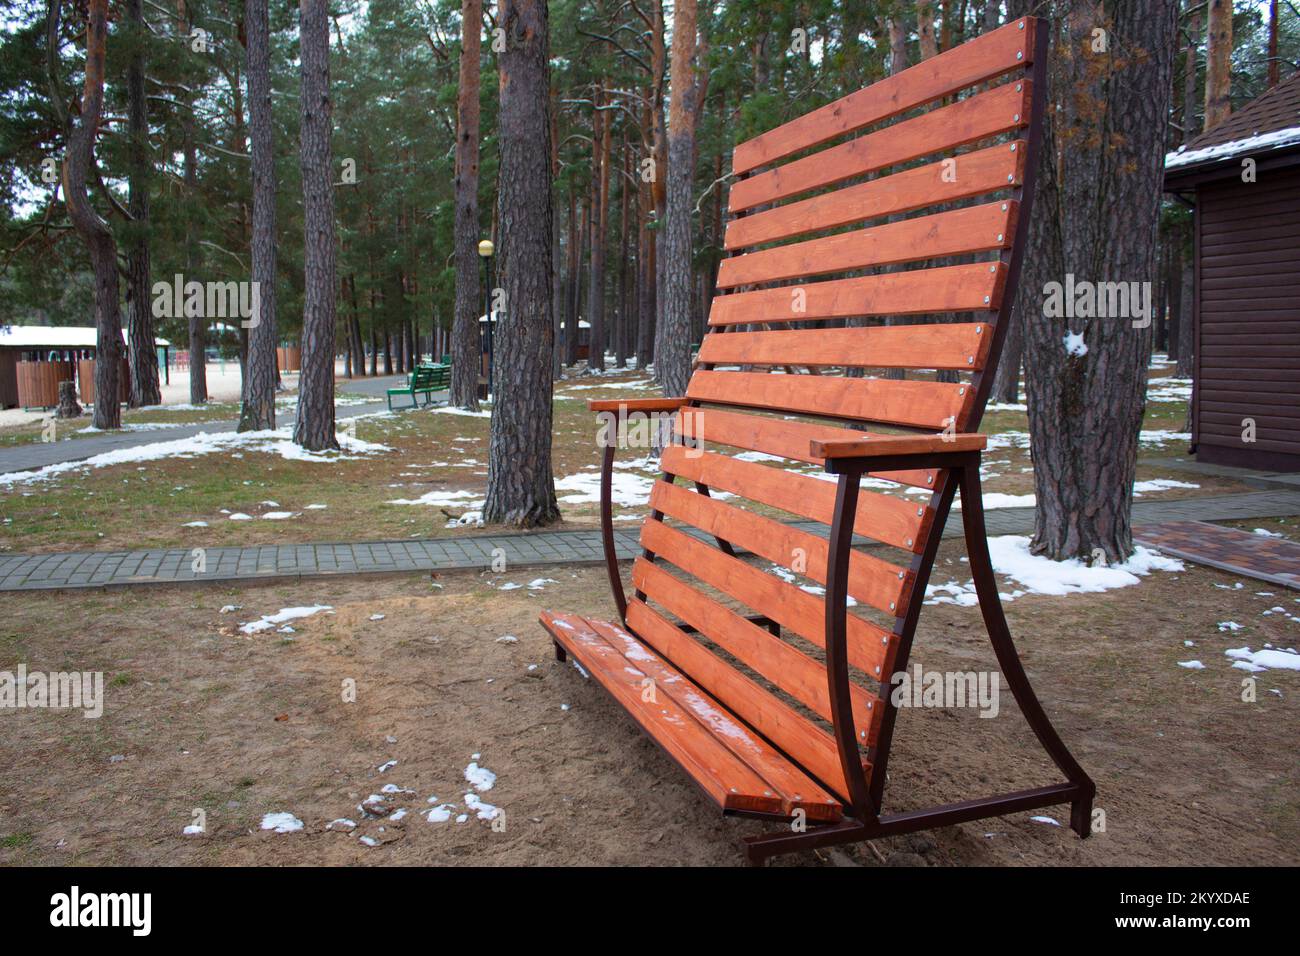 Ein hölzerner vertikaler Liegestuhl befindet sich in einem Pinienwald. Liegestuhl aus Holz zum Stehen und Sonnenbaden. Wintertag in einem Erholungsgebiet in einem Pinienwald. Stockfoto